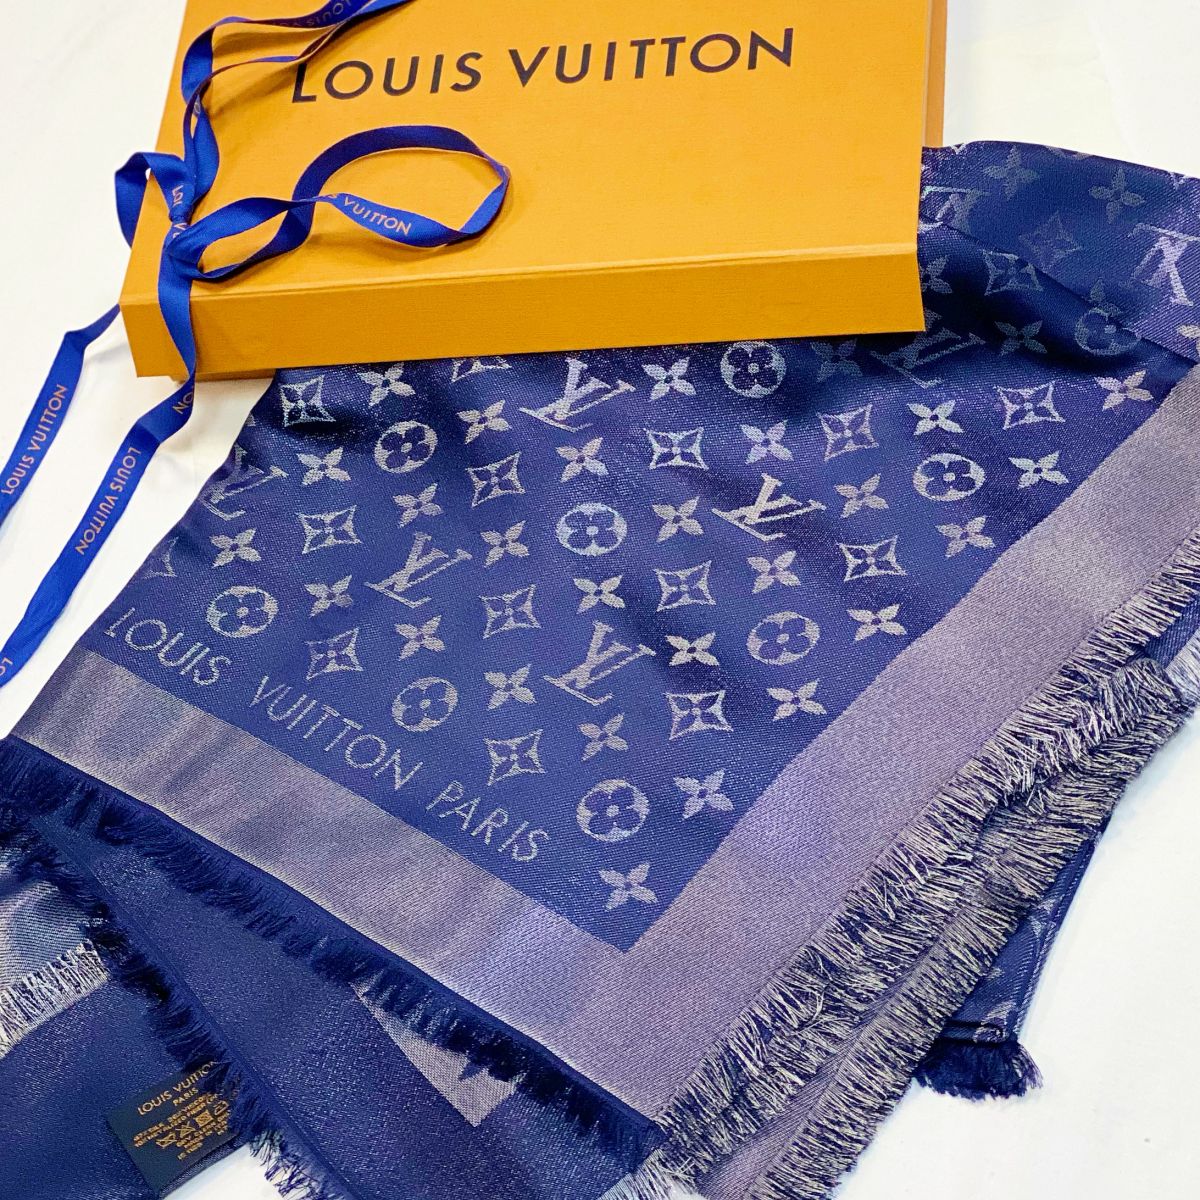 Шаль / шёлк / шерсть / люрекс / Louis Vuitton  размер 140 цена 18 463 руб / новый / упаковка / 